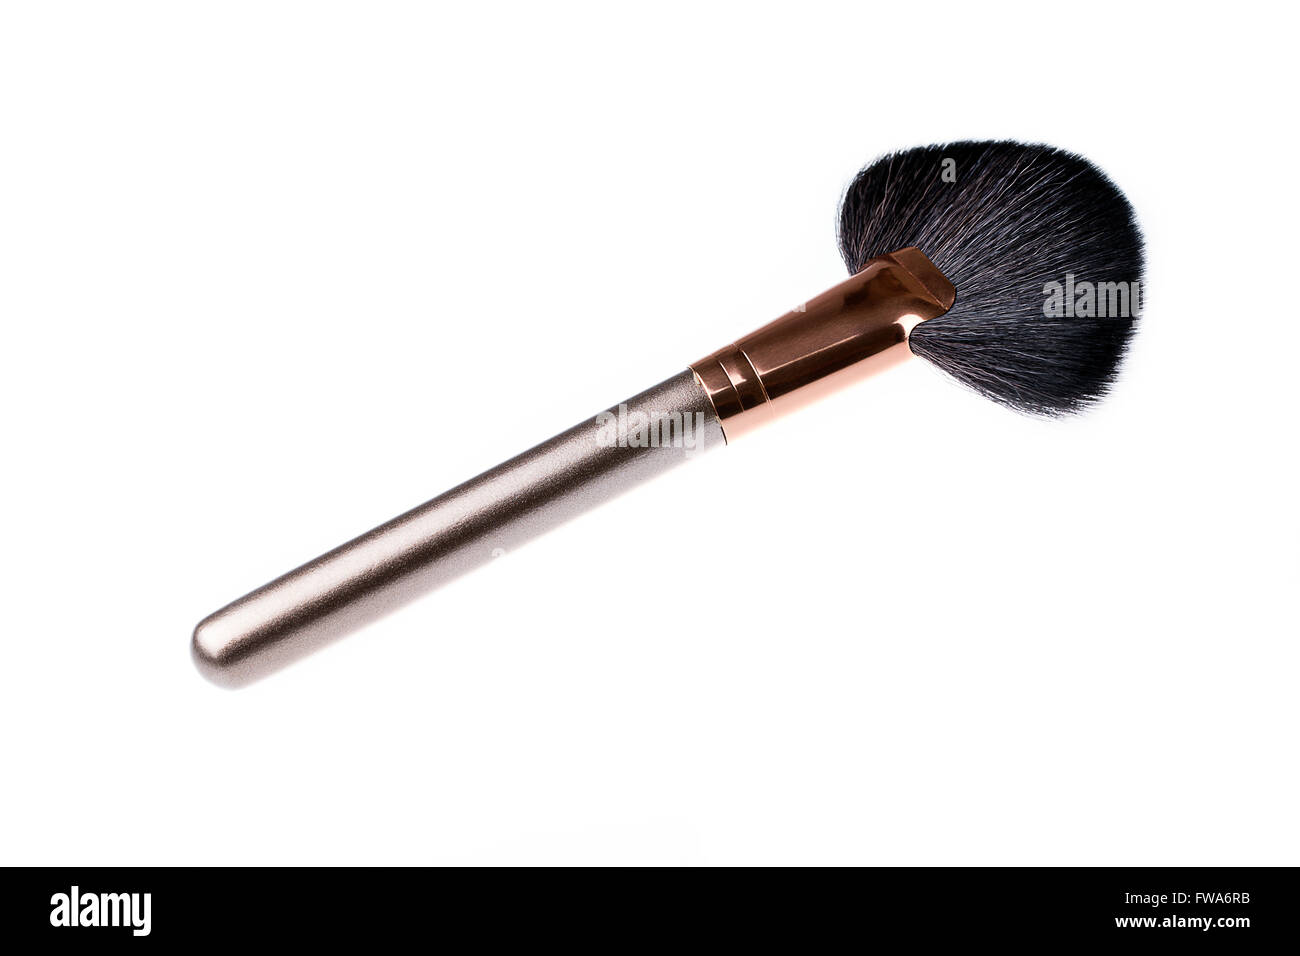 Fächerpinsel für Make-up zu machen, komplett schließen Kosmetik Scaterred  auf den Wangen Stockfotografie - Alamy